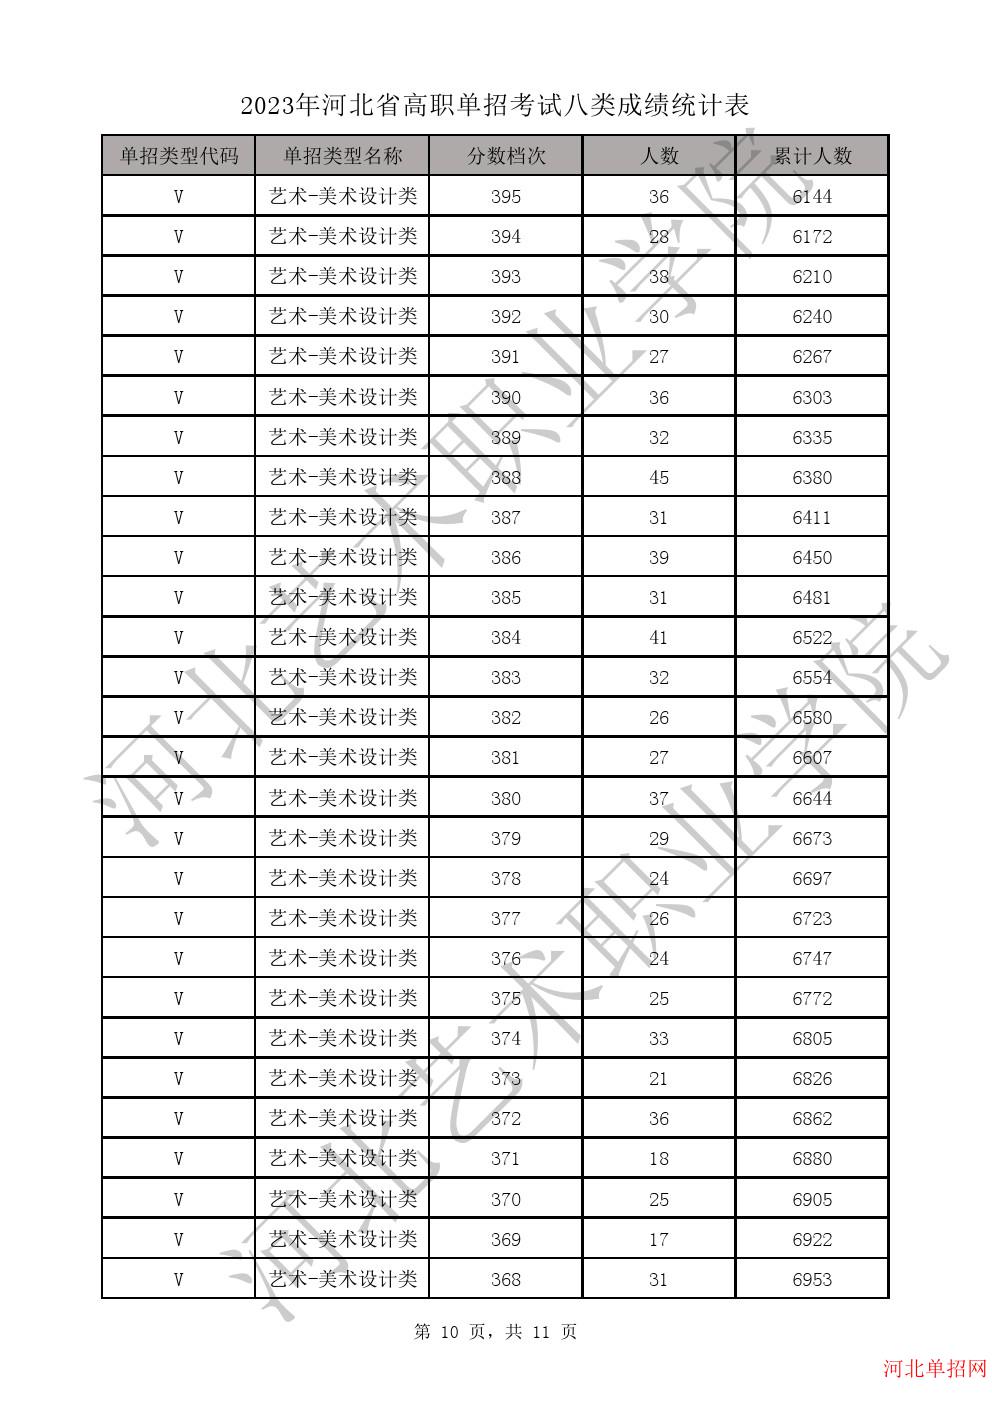 2023年河北省高职单招考试八类成绩统计表-V艺术-美术设计类一分一档表 图10